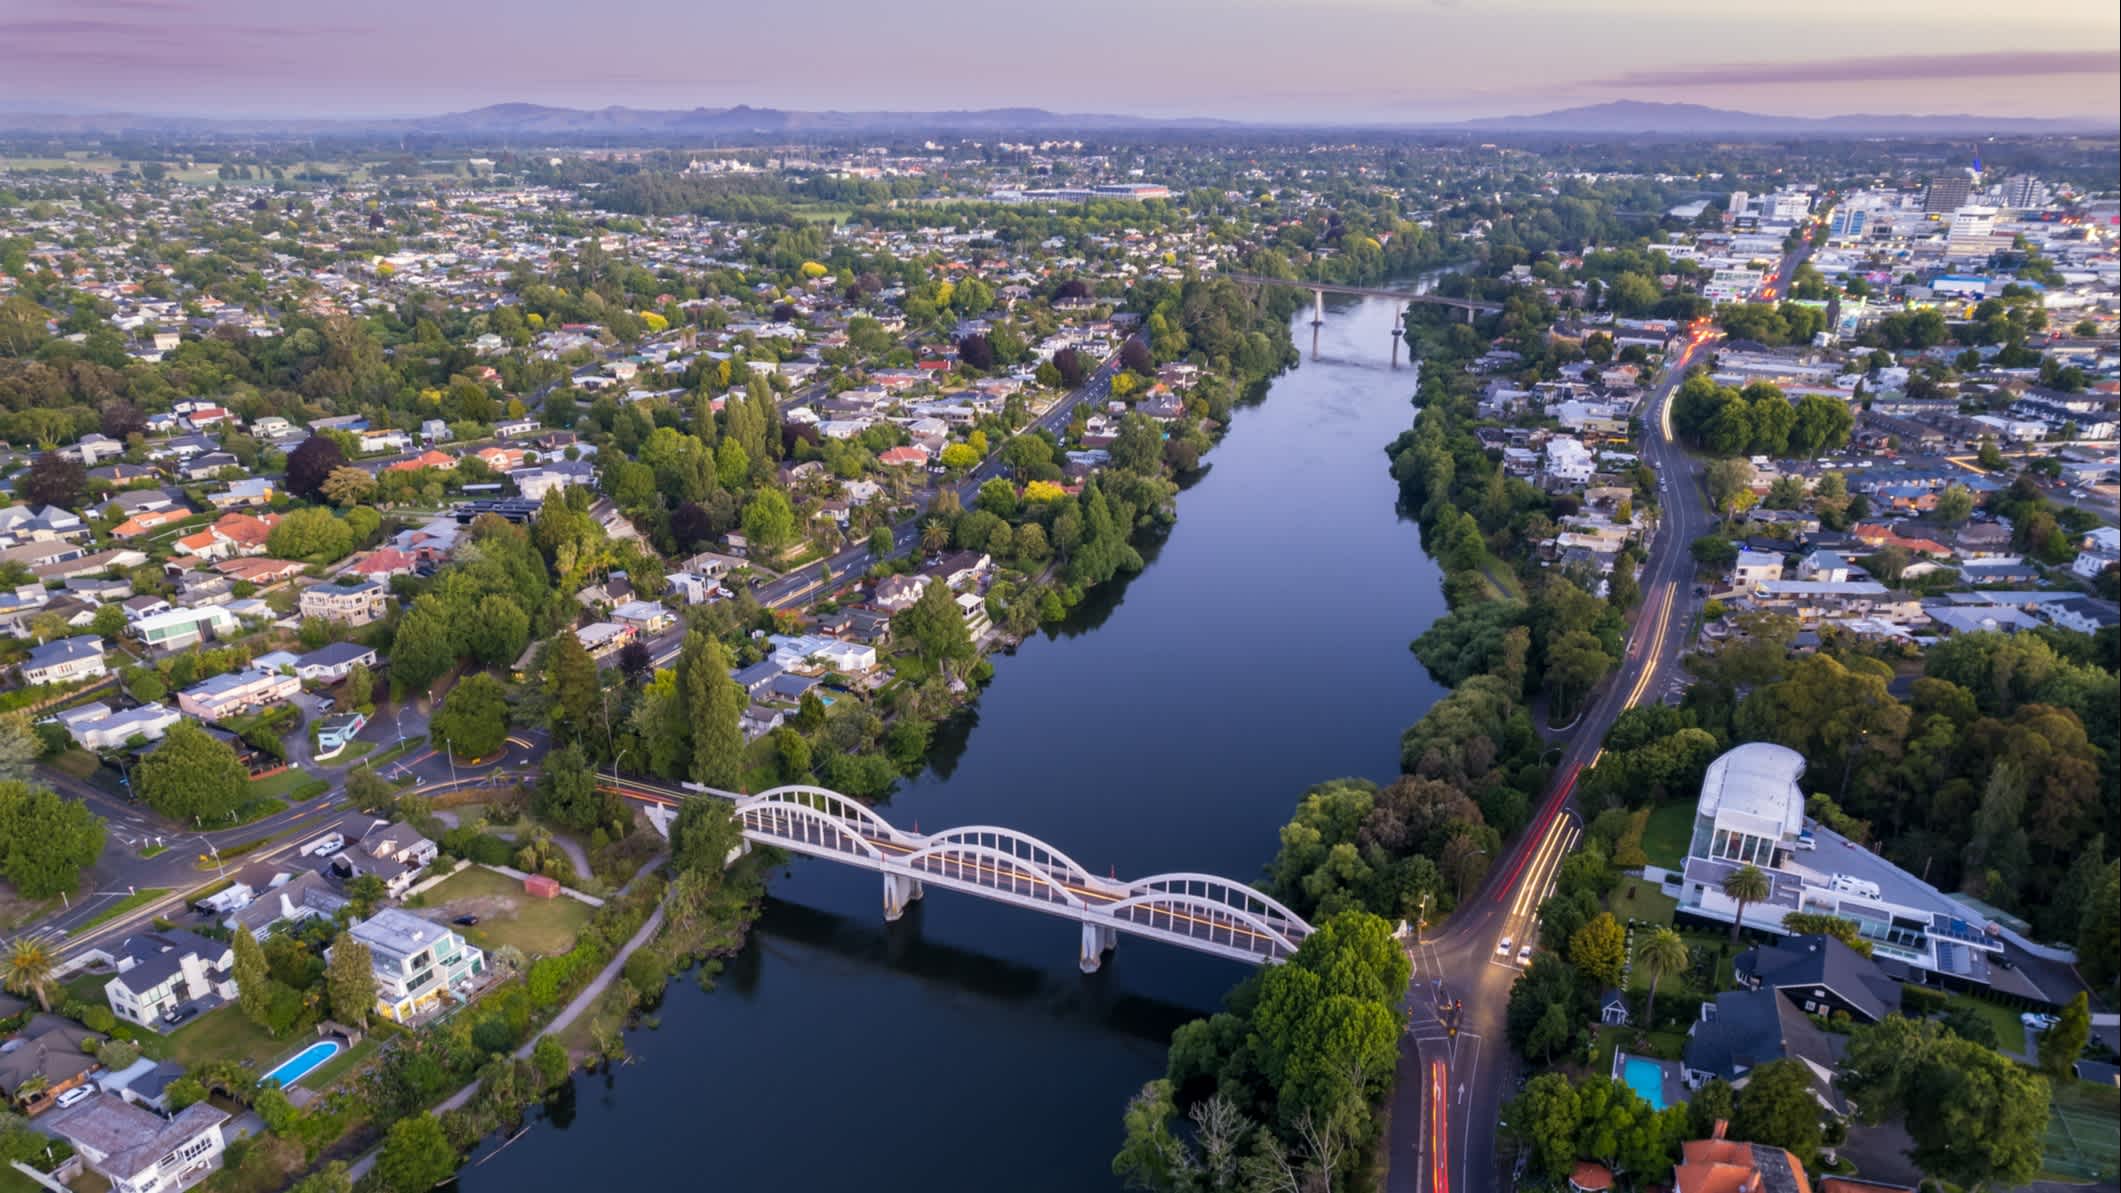 Une image de drone de la ville de Hamilton dans le Waikato, Nouvelle-Zélande.

